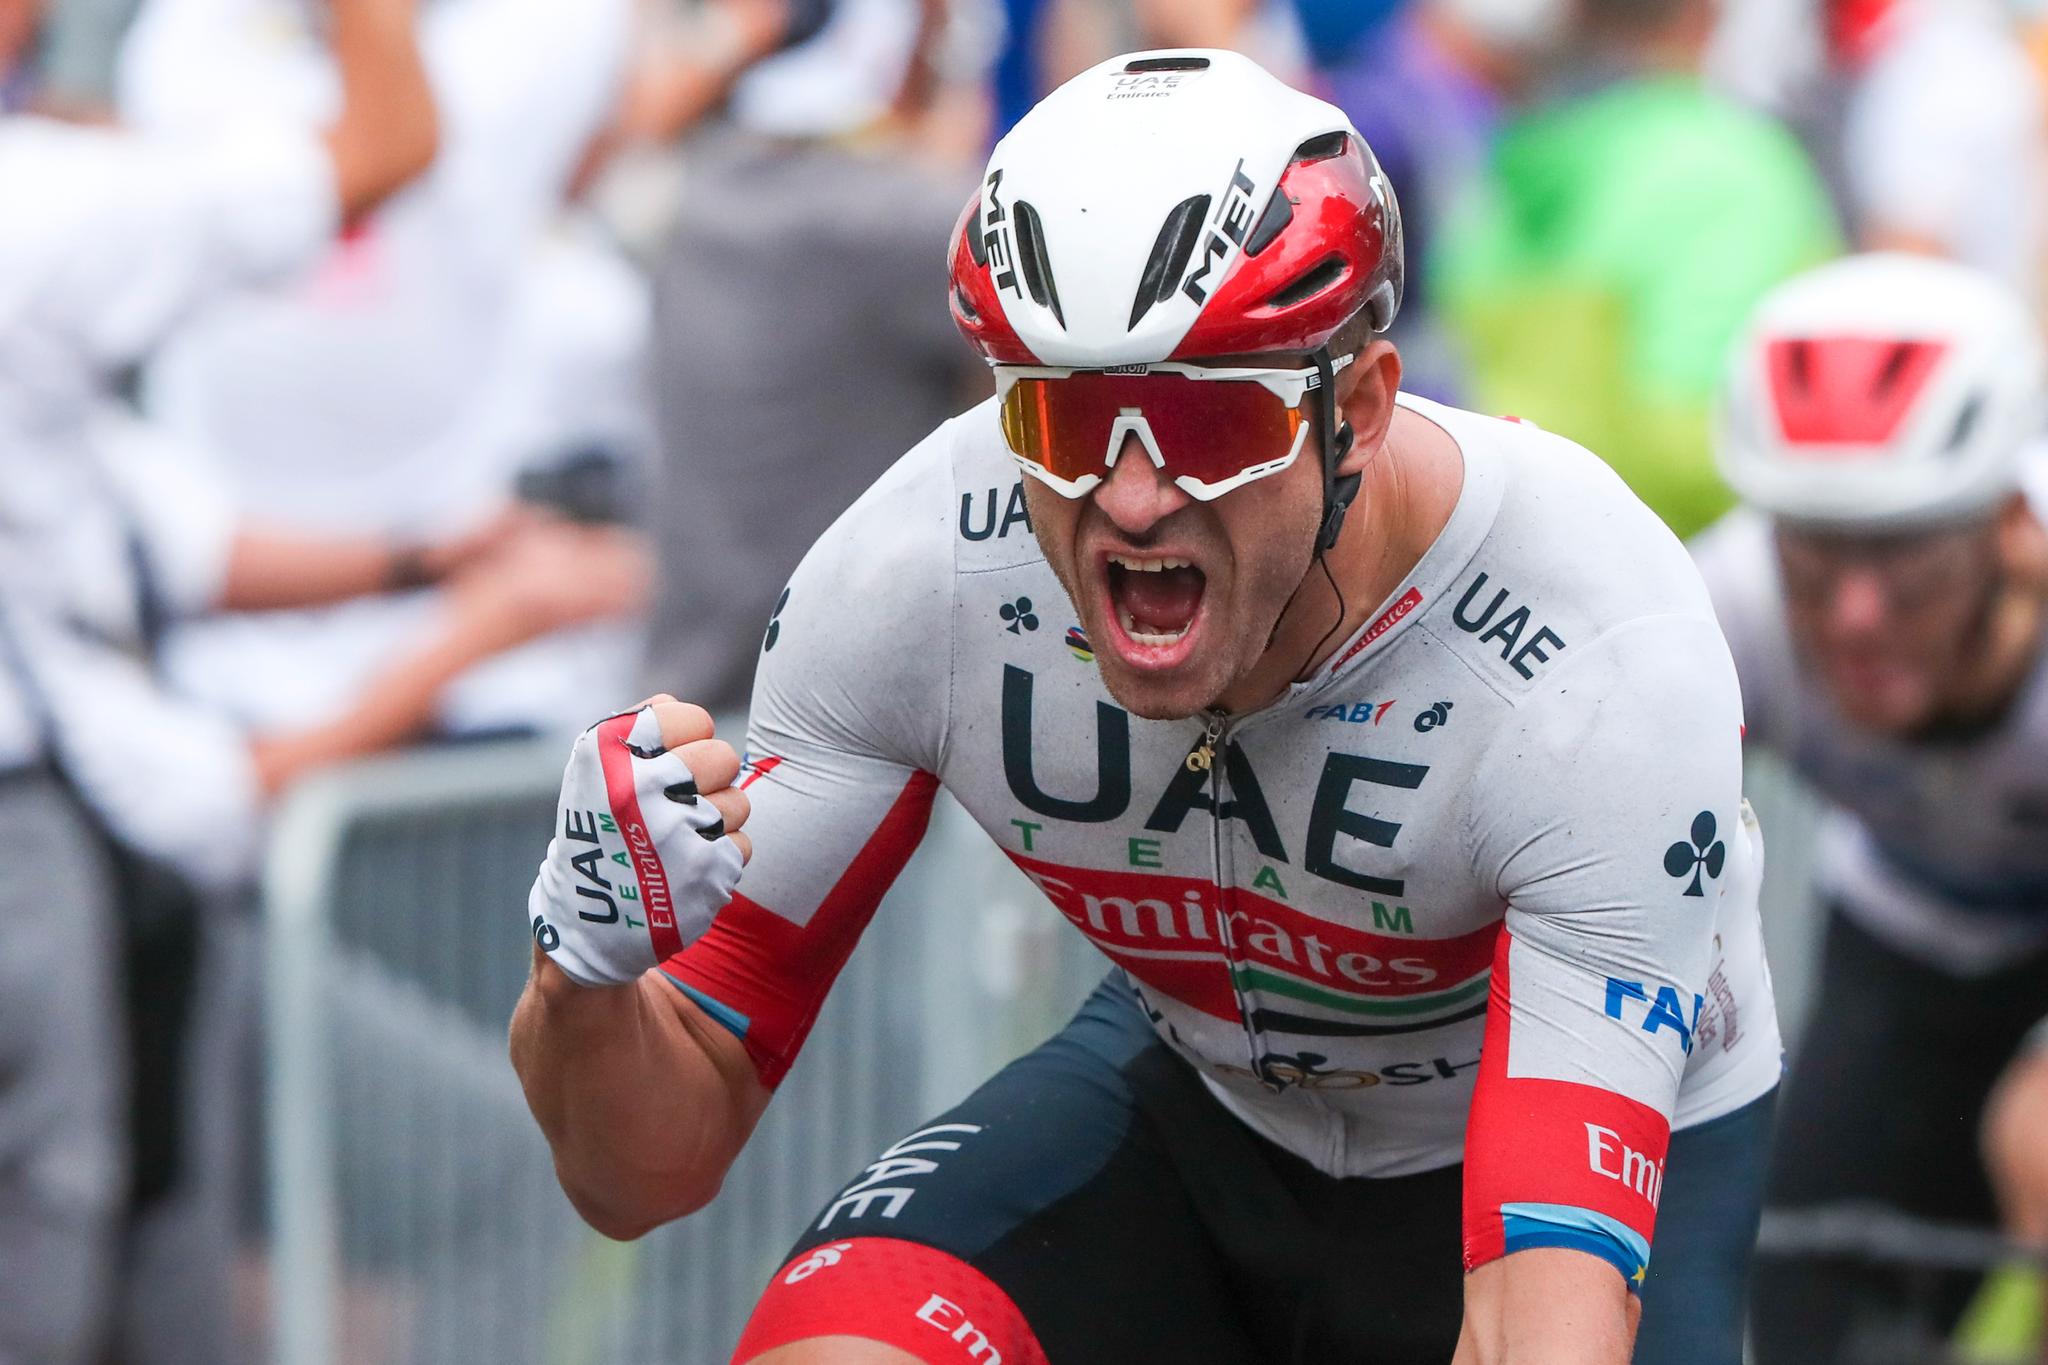 Alexander Kristoff vant åpningsetappen i Tour de France i fjor.